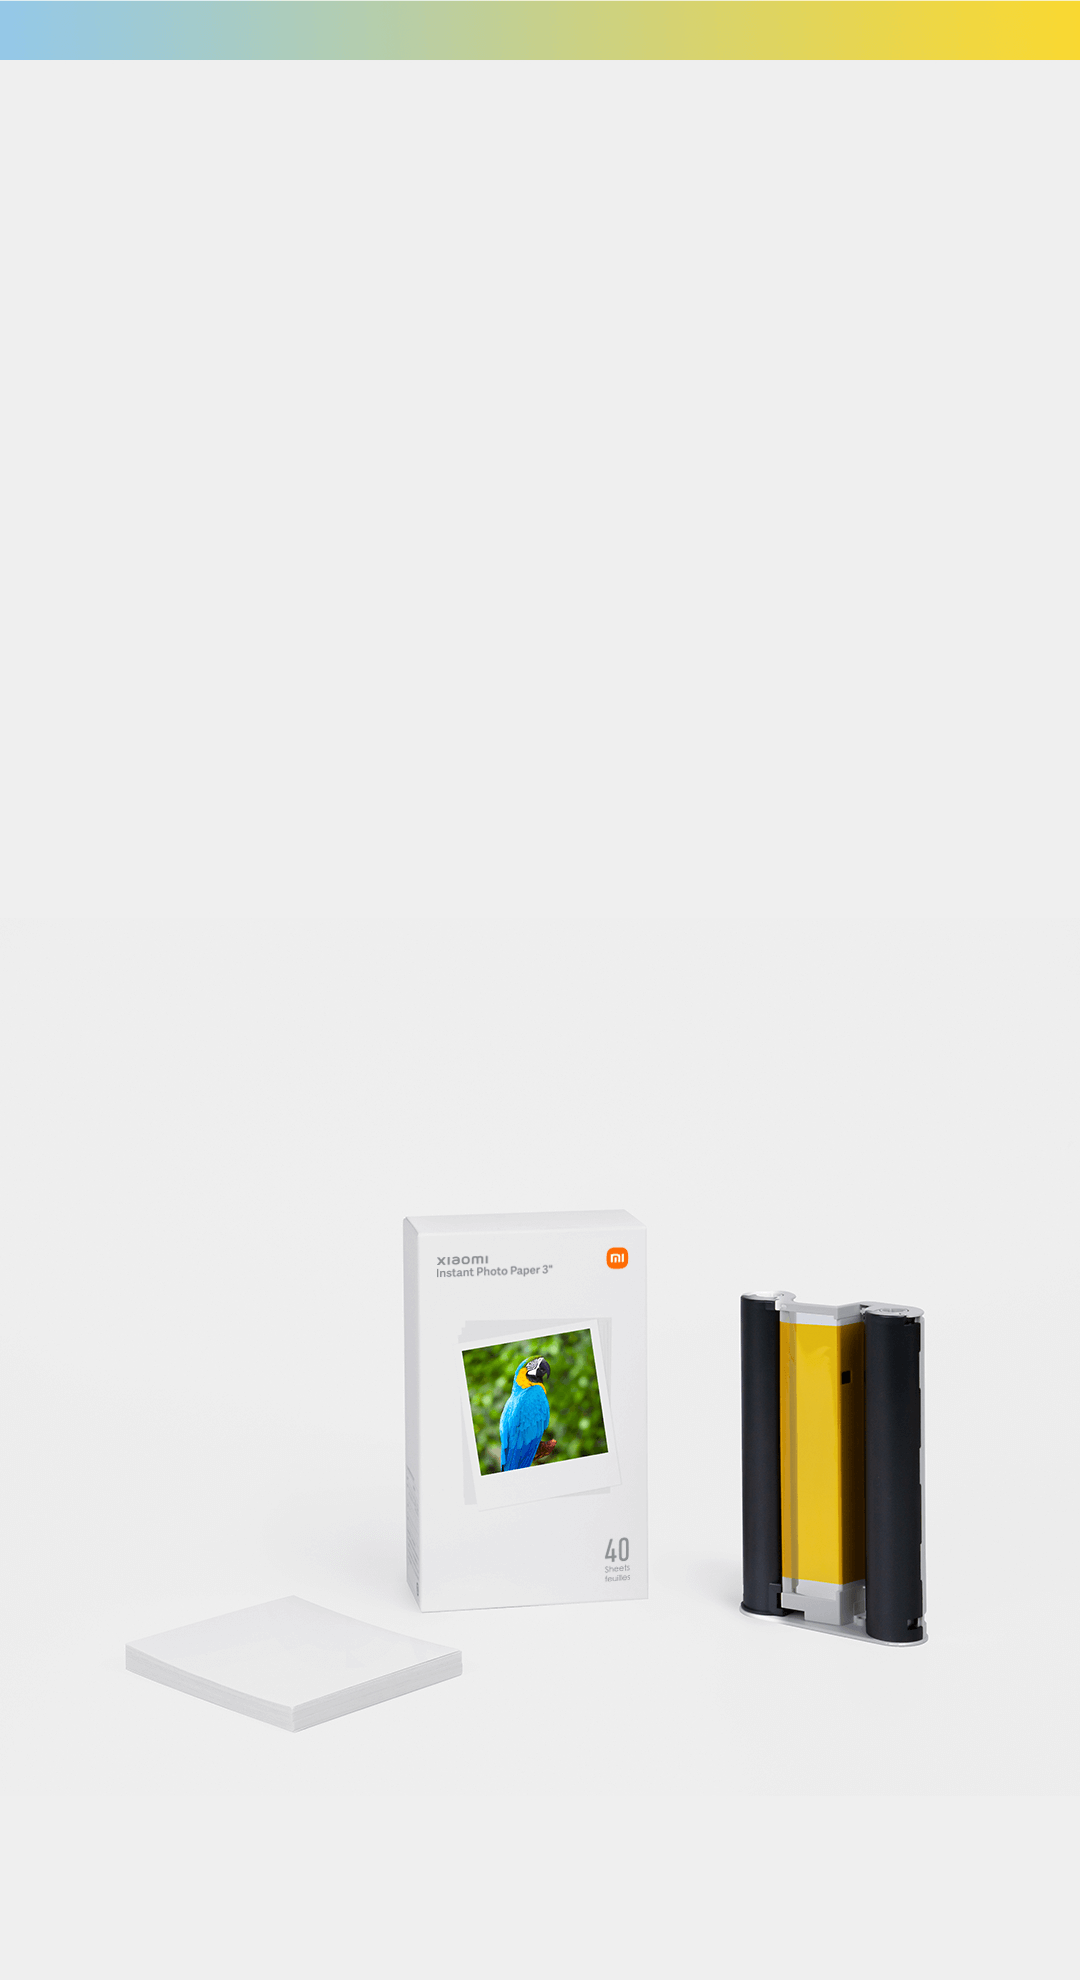 xiaomi instant photo printer 1s set - Xiaomi Italia